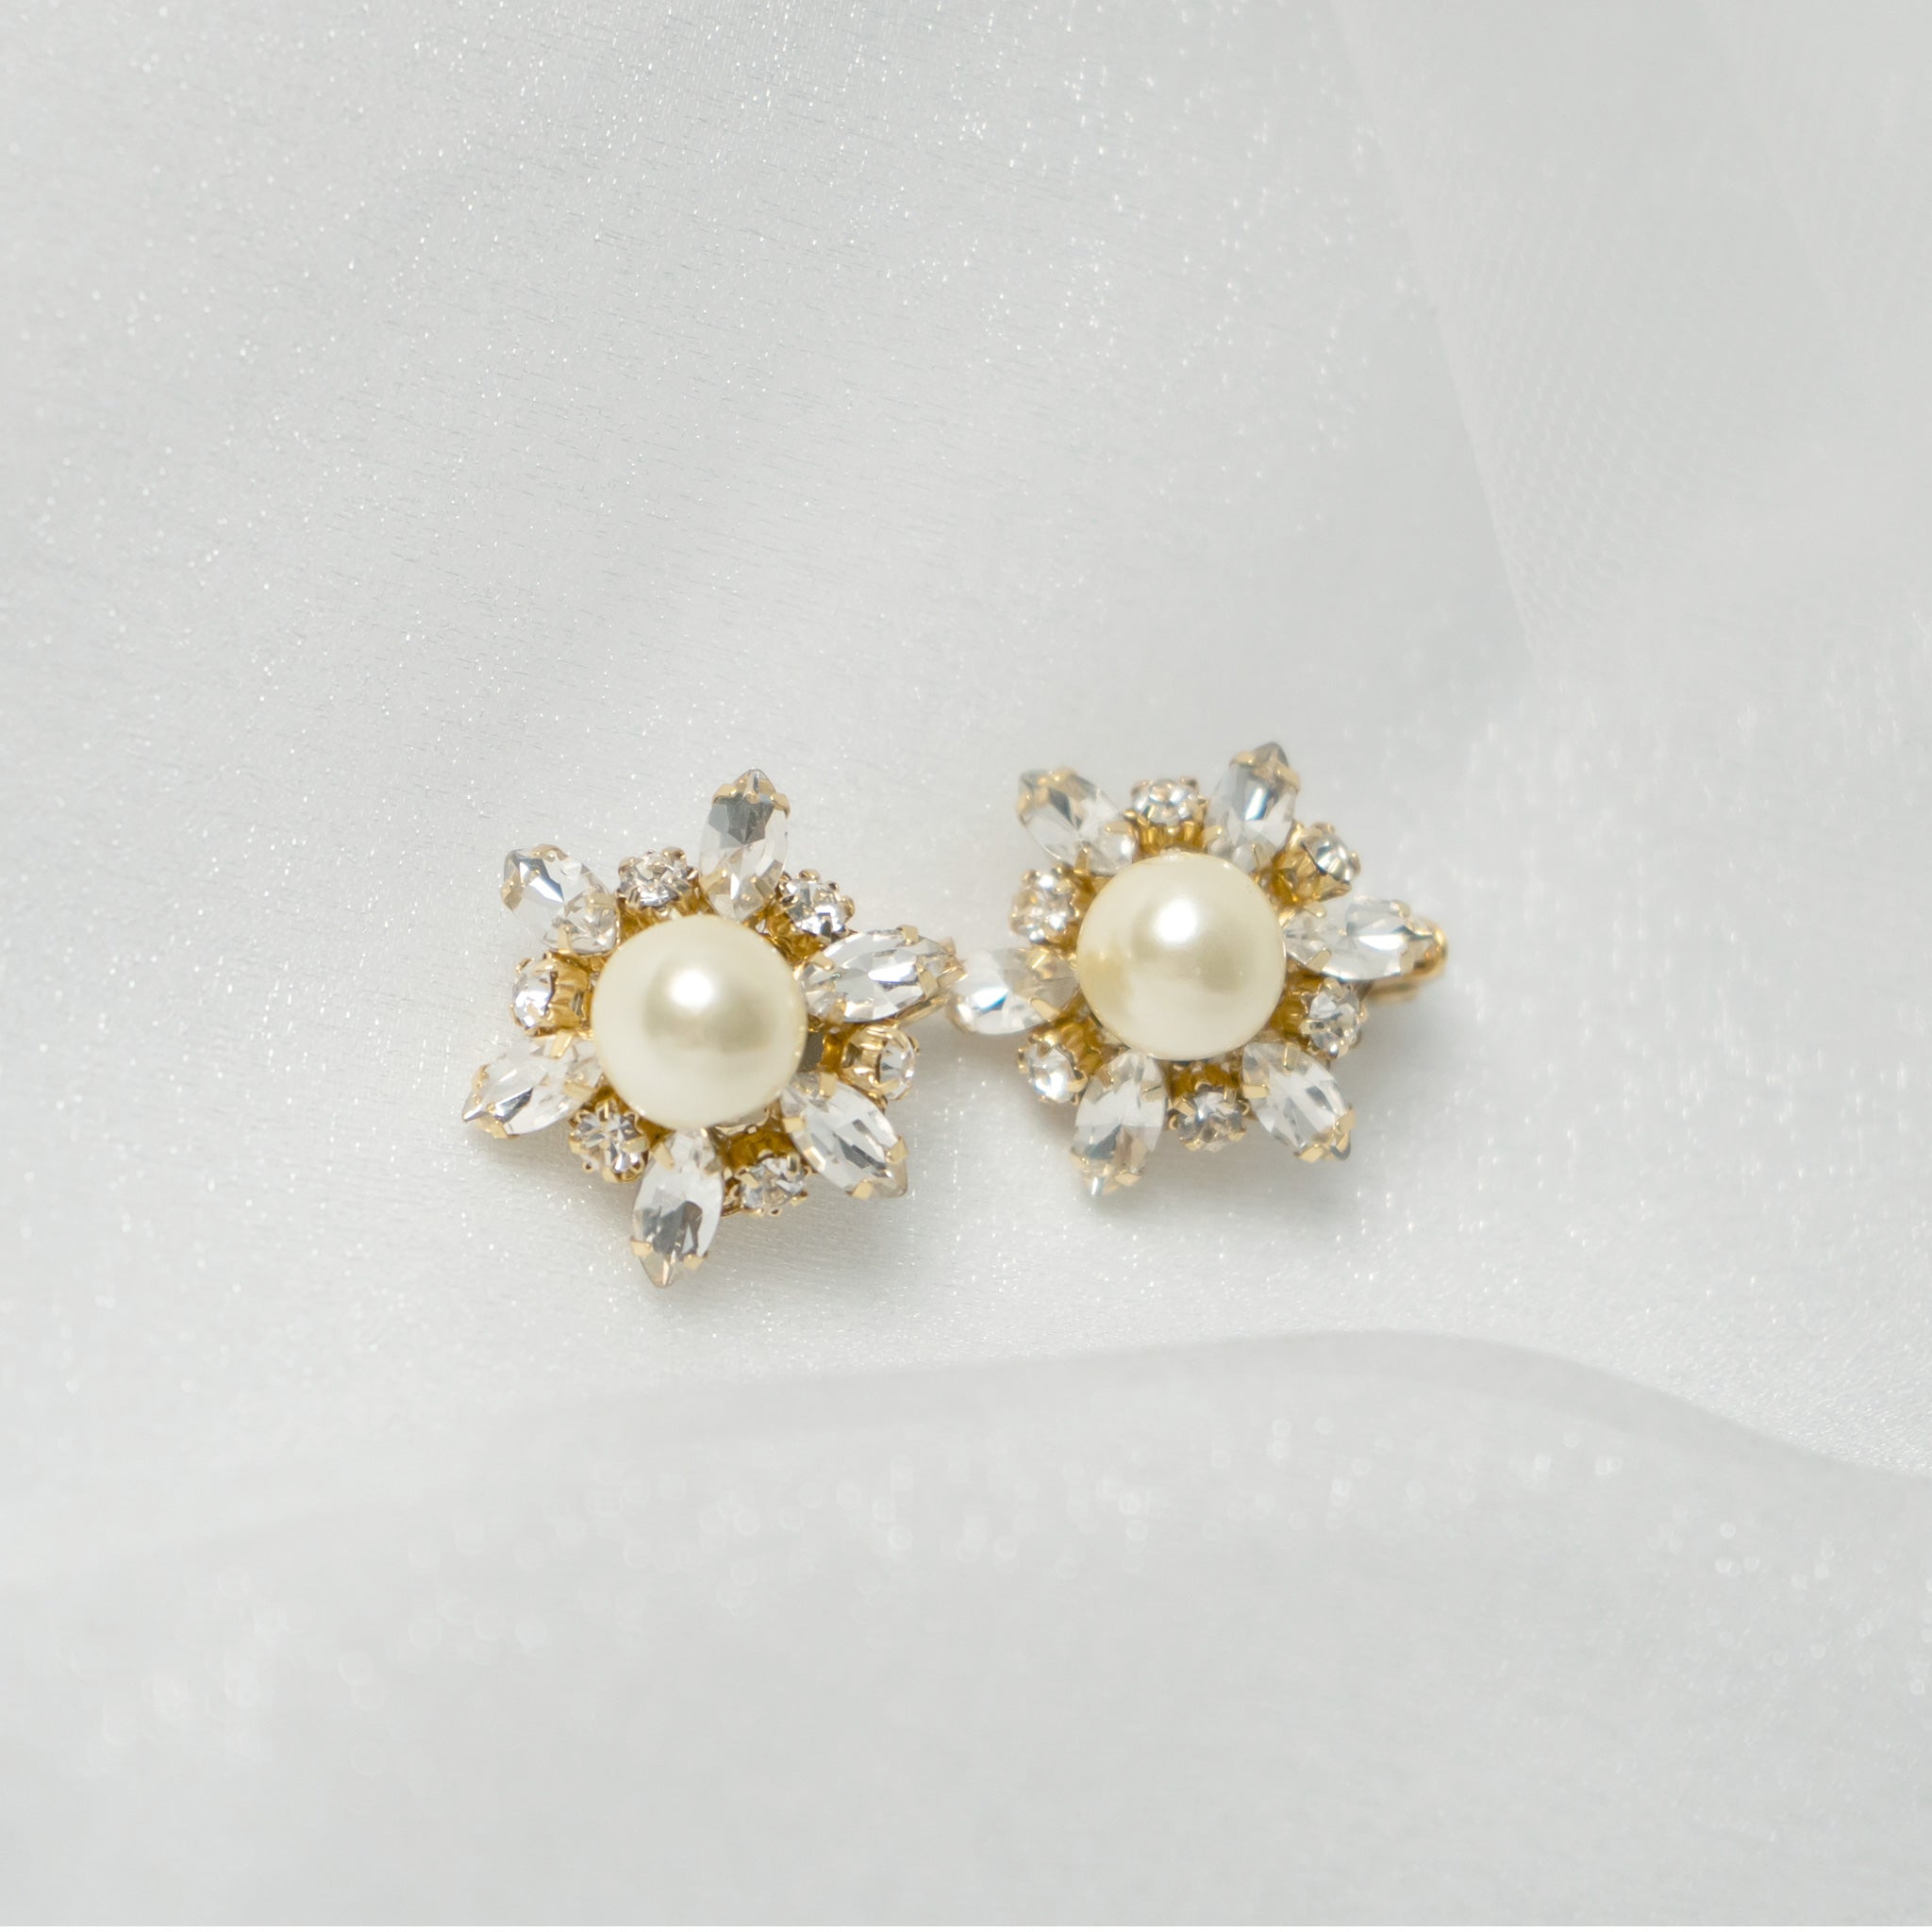 Flower bijou earrings / earrings